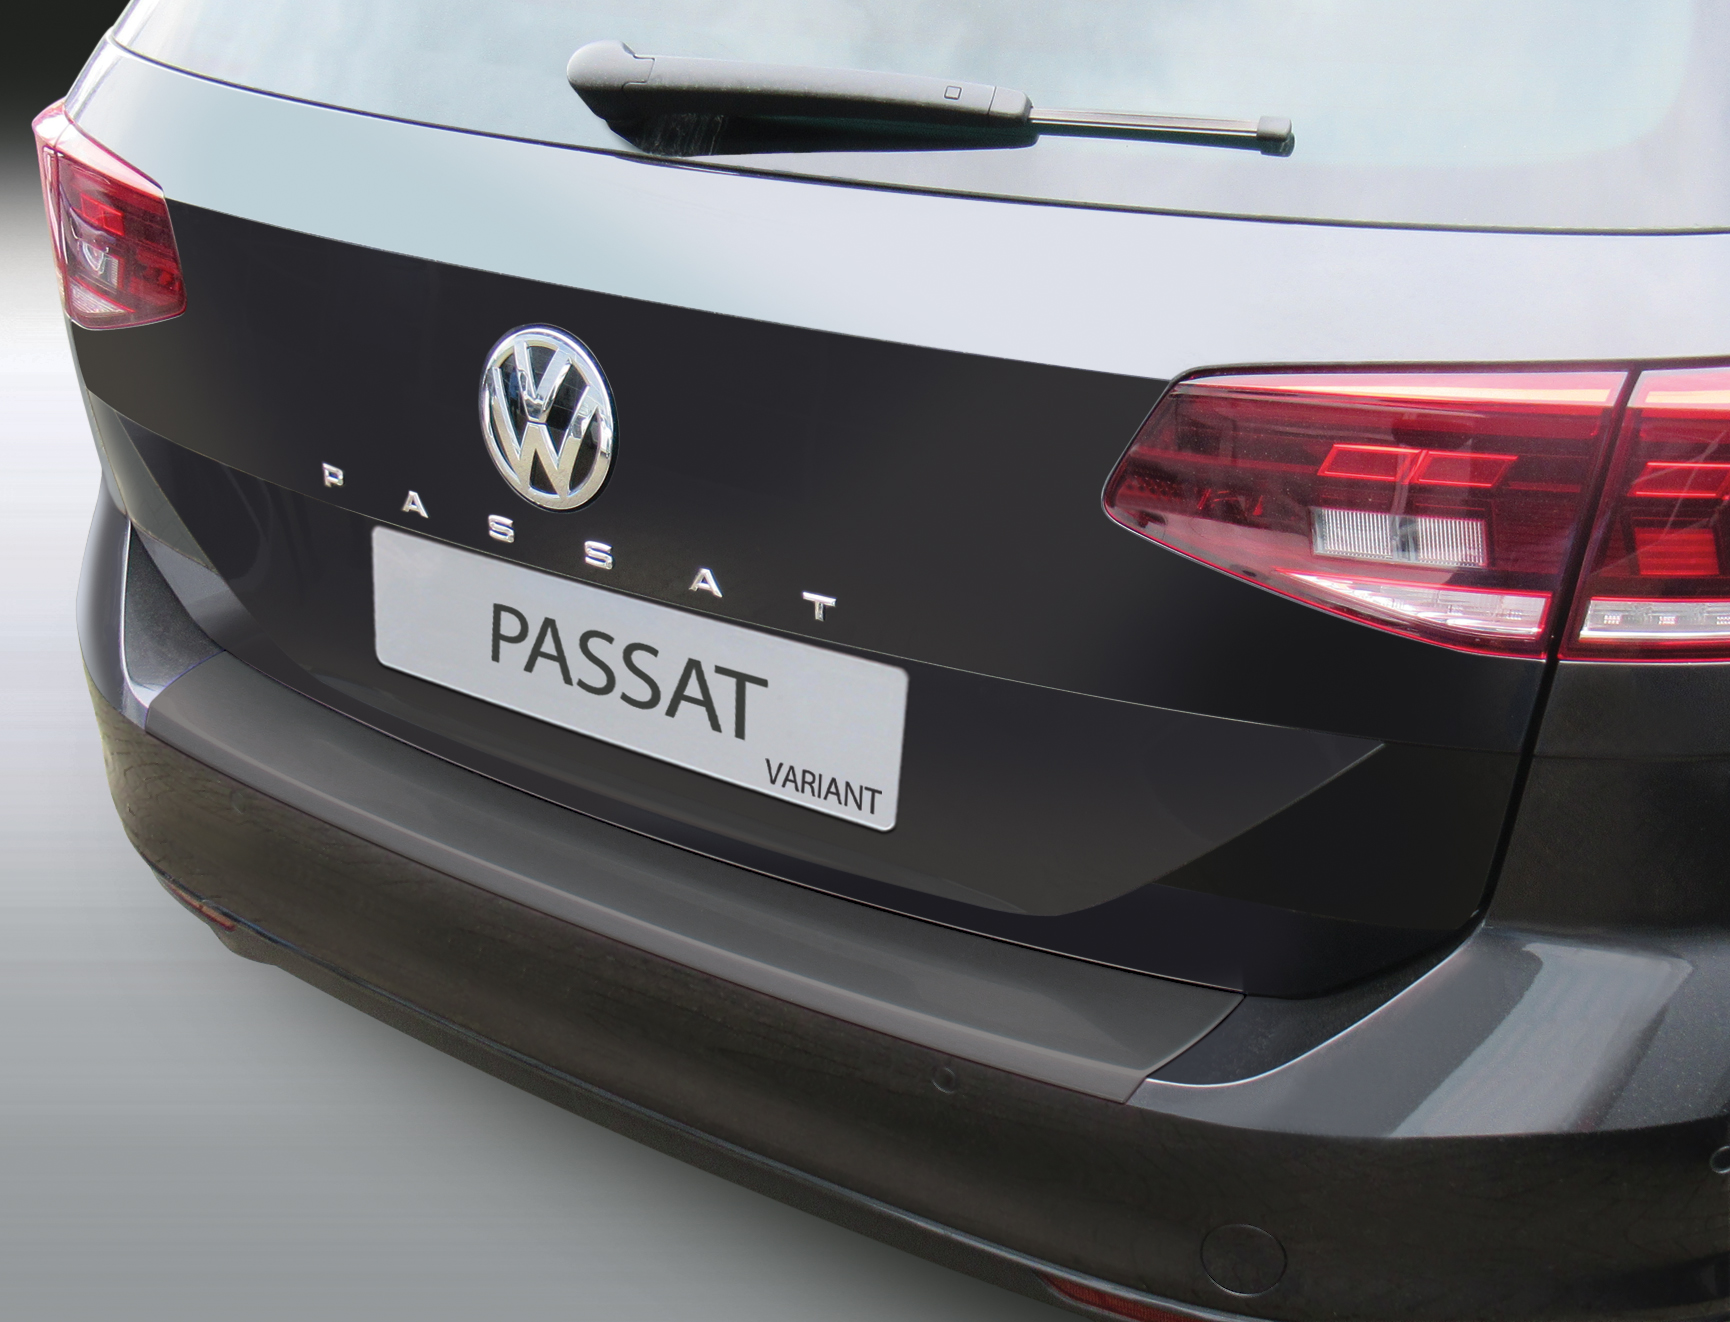 Ladekantenschutz Folie Schutz in Carbon Optik Für VW Passat B8